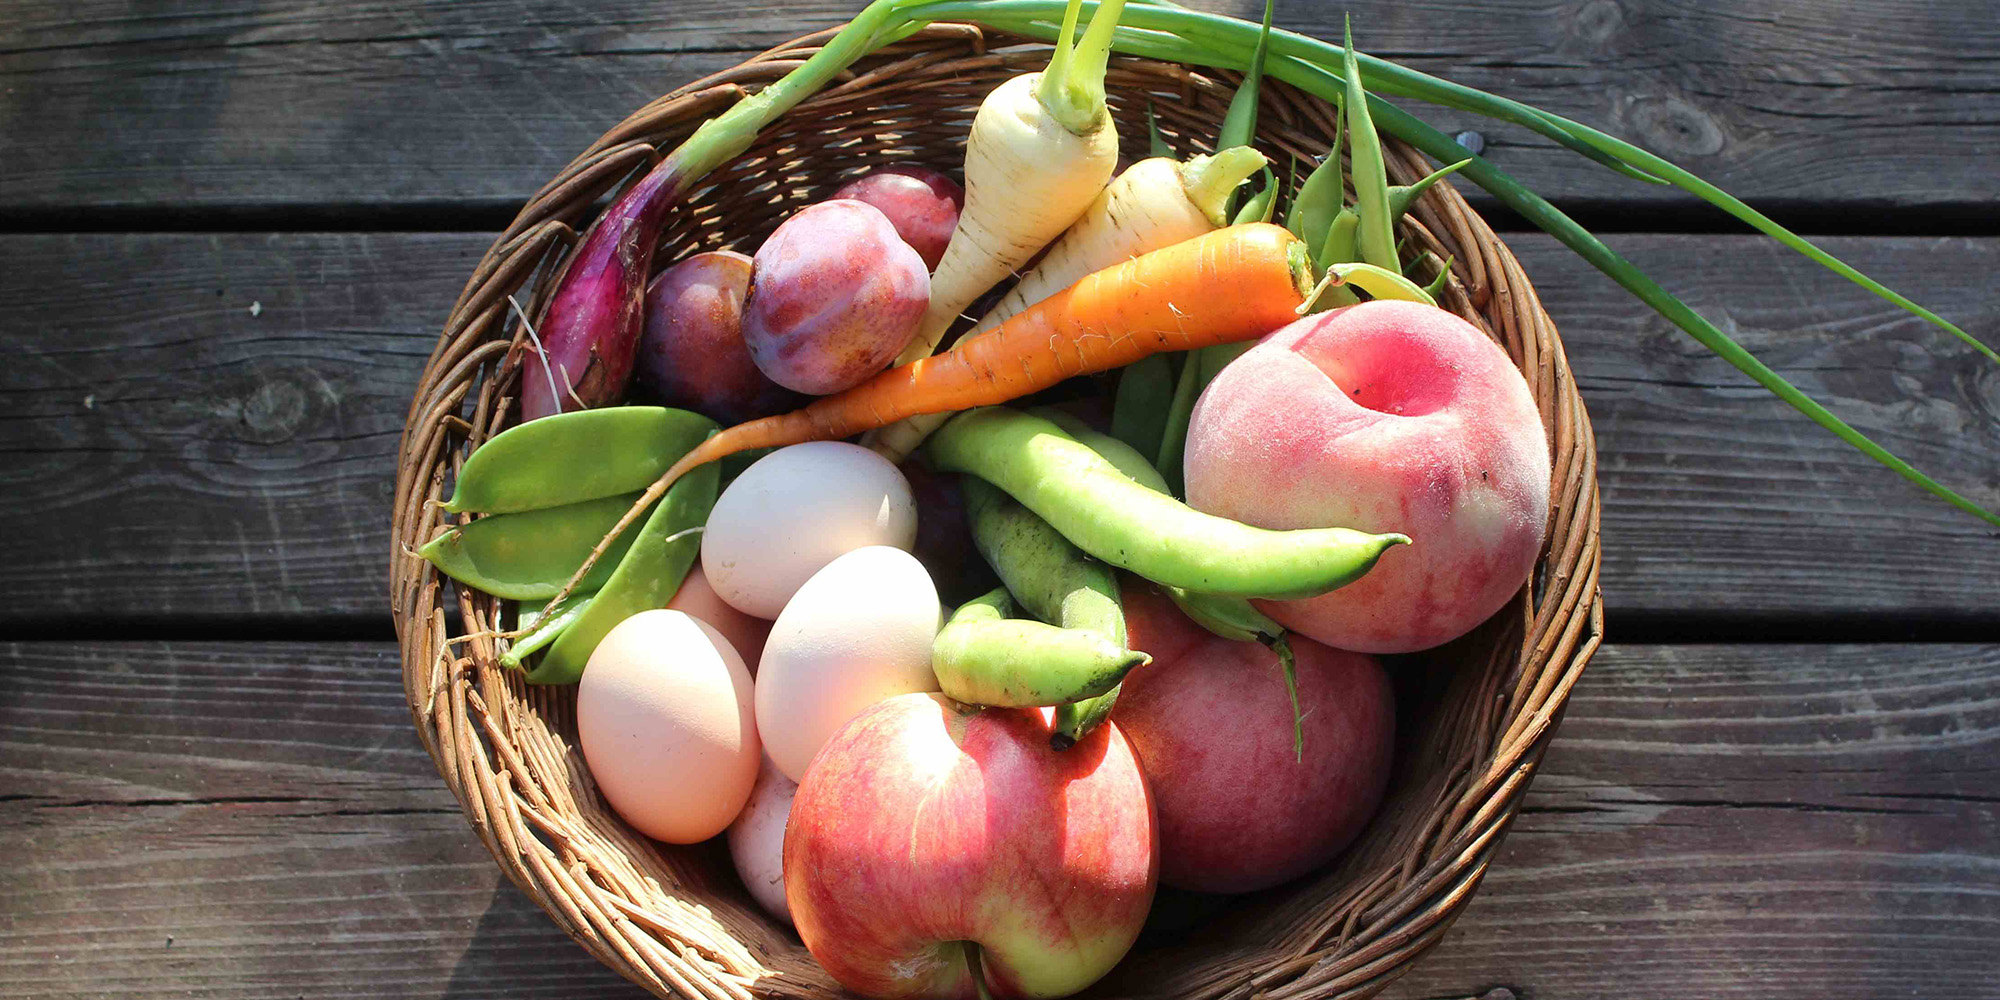 Dyrk dine egne grøntsager - frugt og grønt fra haven, fx æbler, ærter, blommer, pastinak - kursus hos FOF